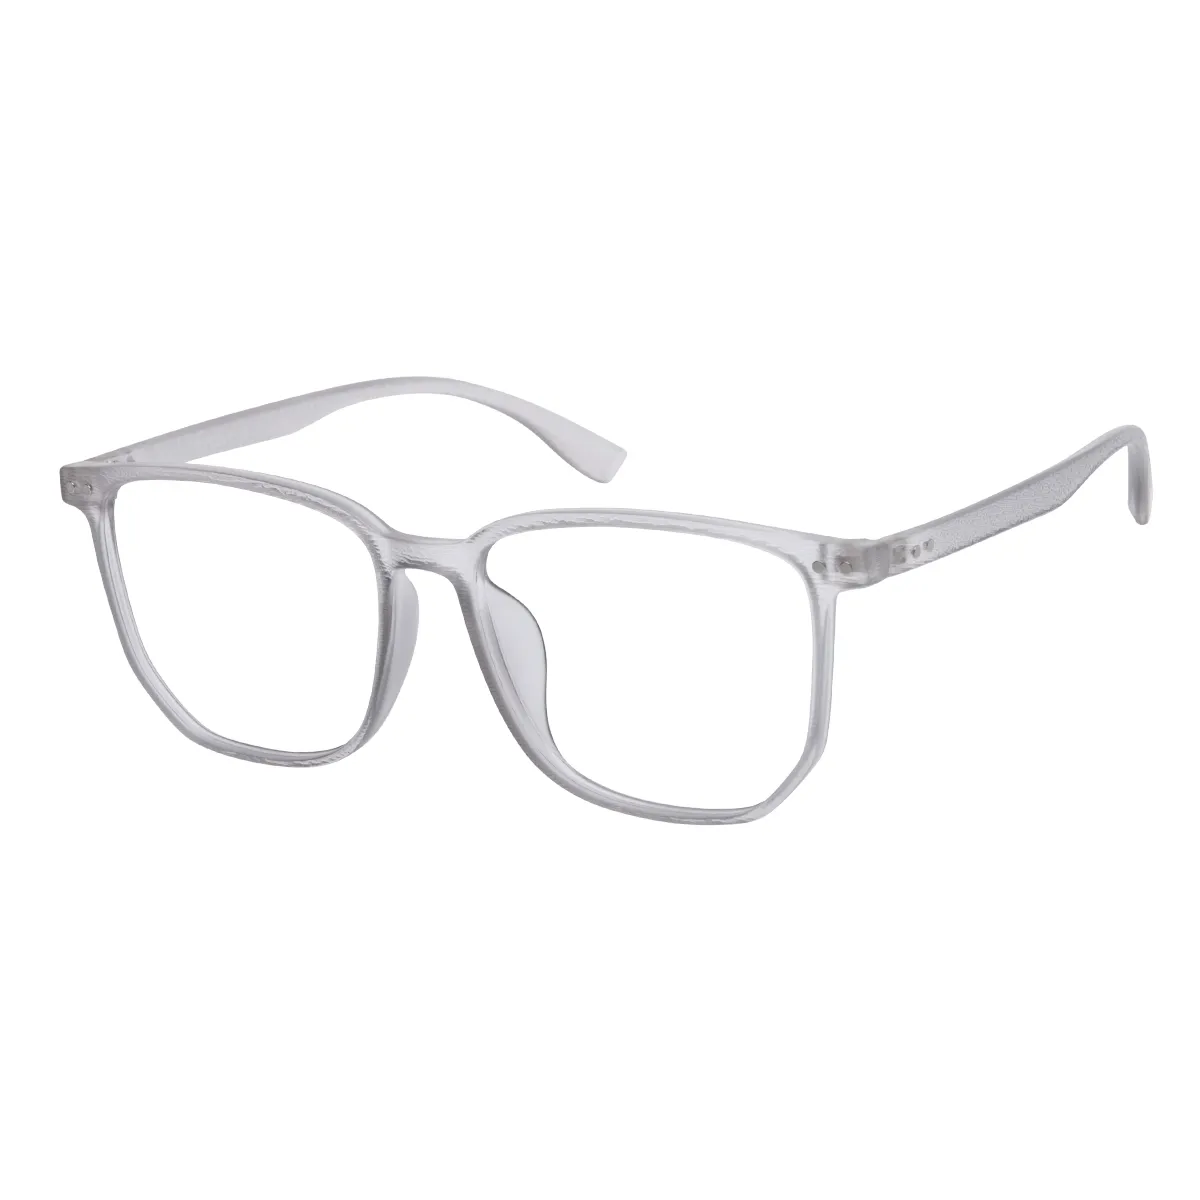 Vega - Square Gray Glasses for Men & Women